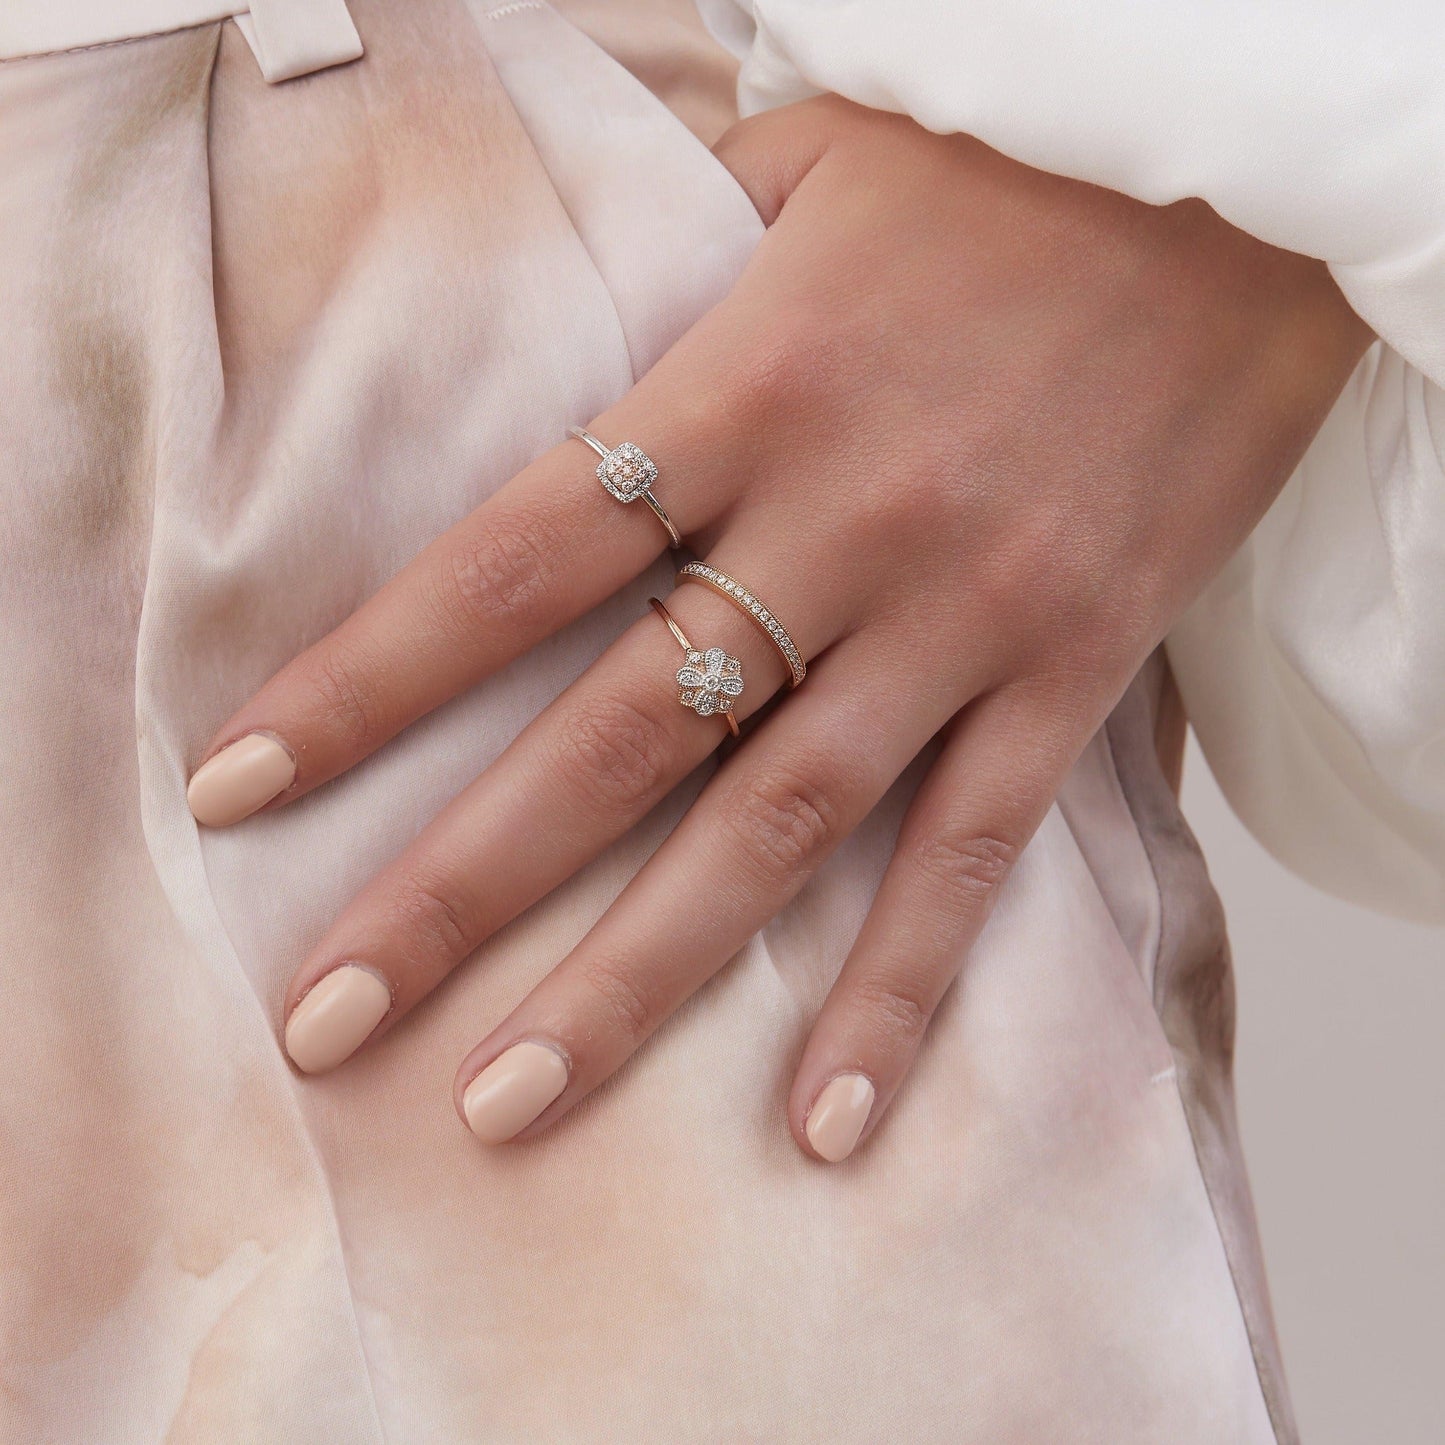 Eminence Pinks Vintage Ring - Rosendorff Diamond Jewellers